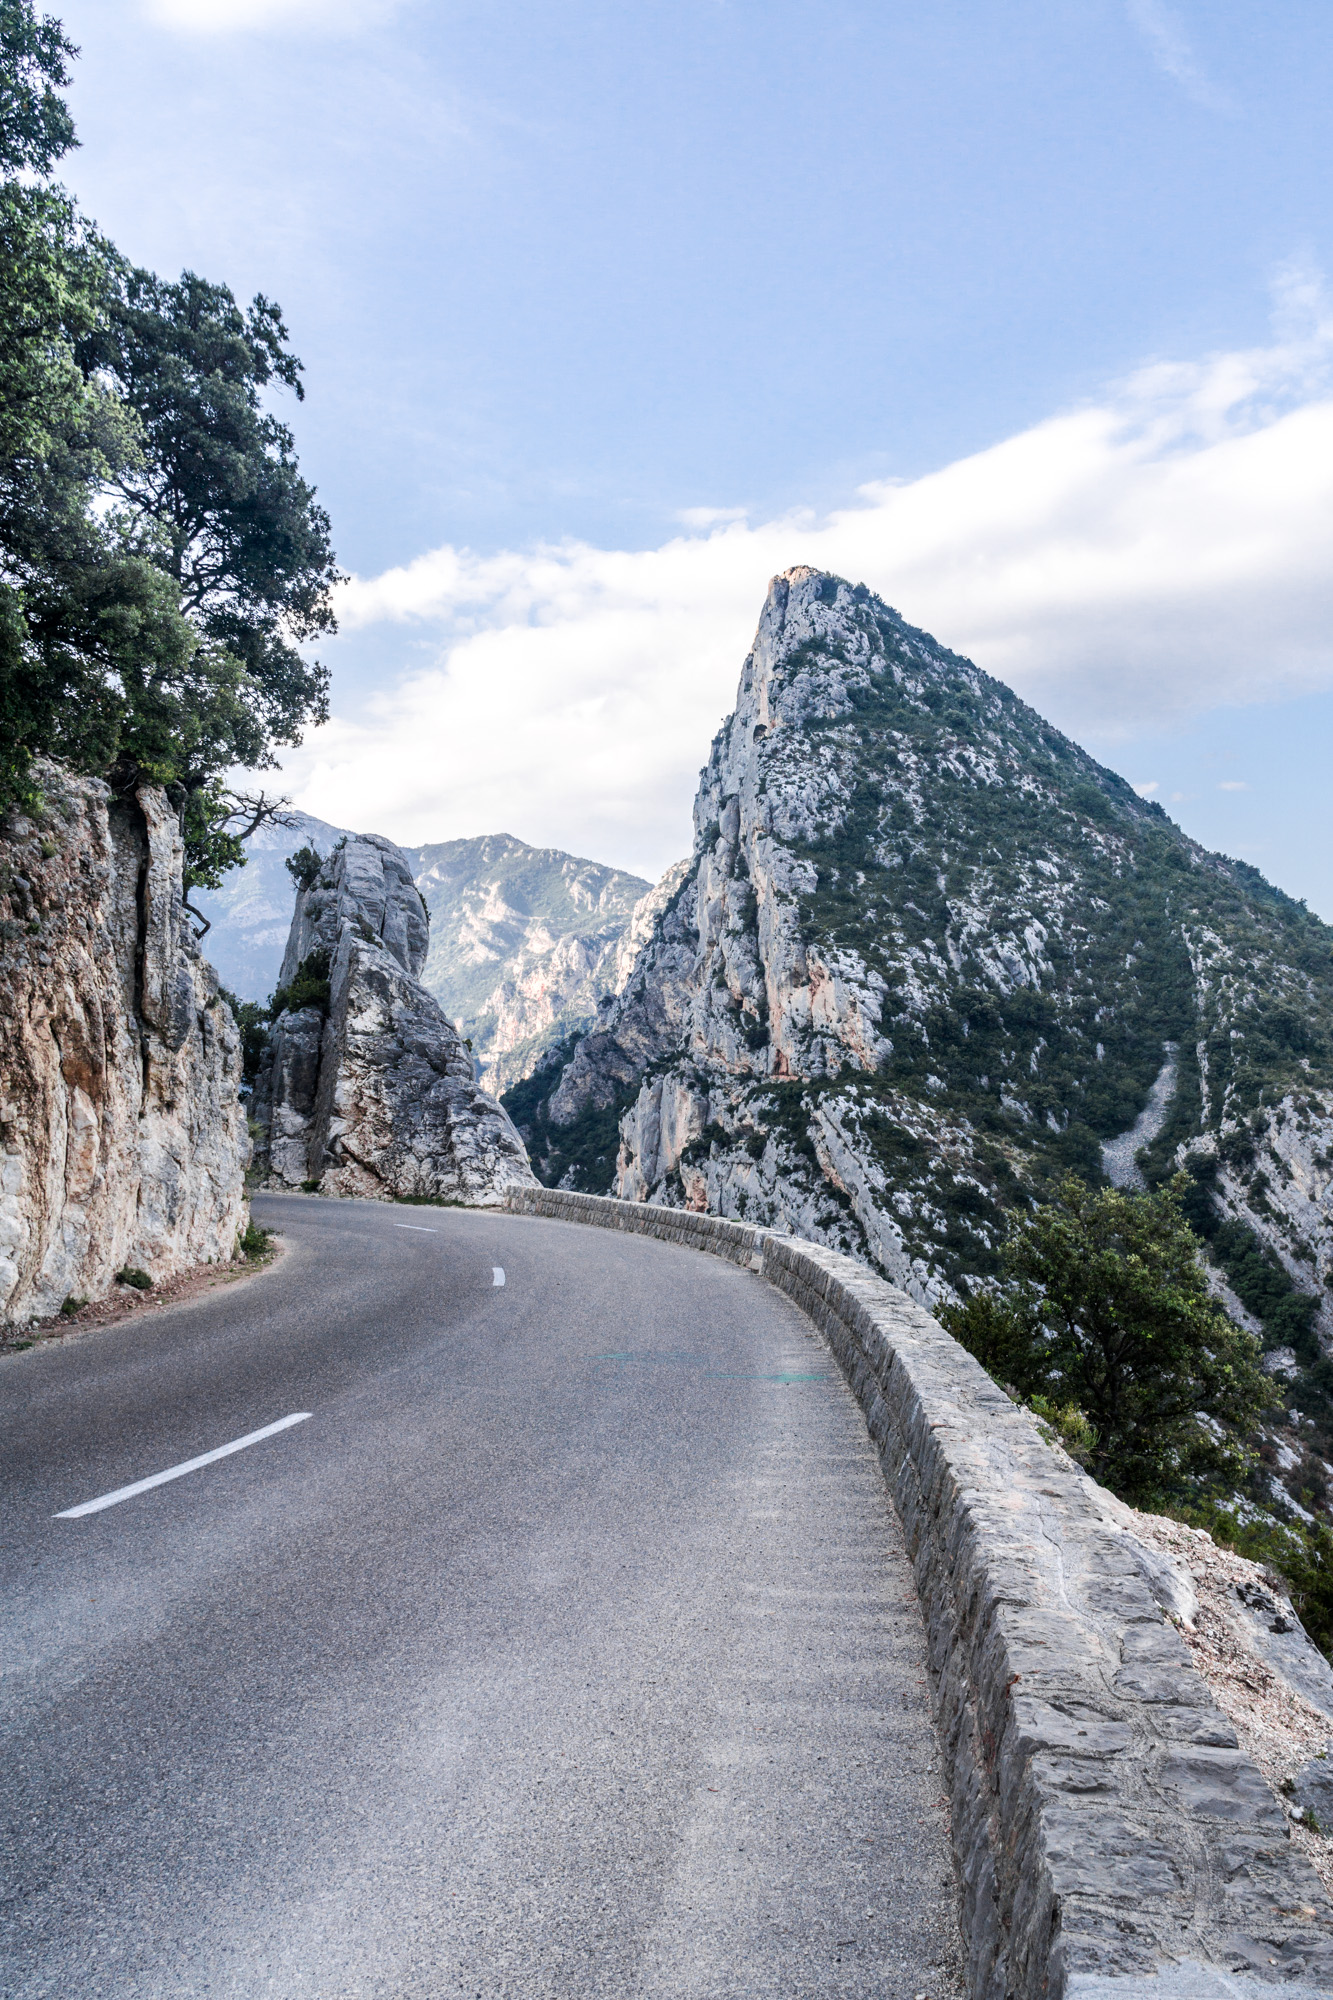 France/Italy roadtrip – Gorges du Verdon